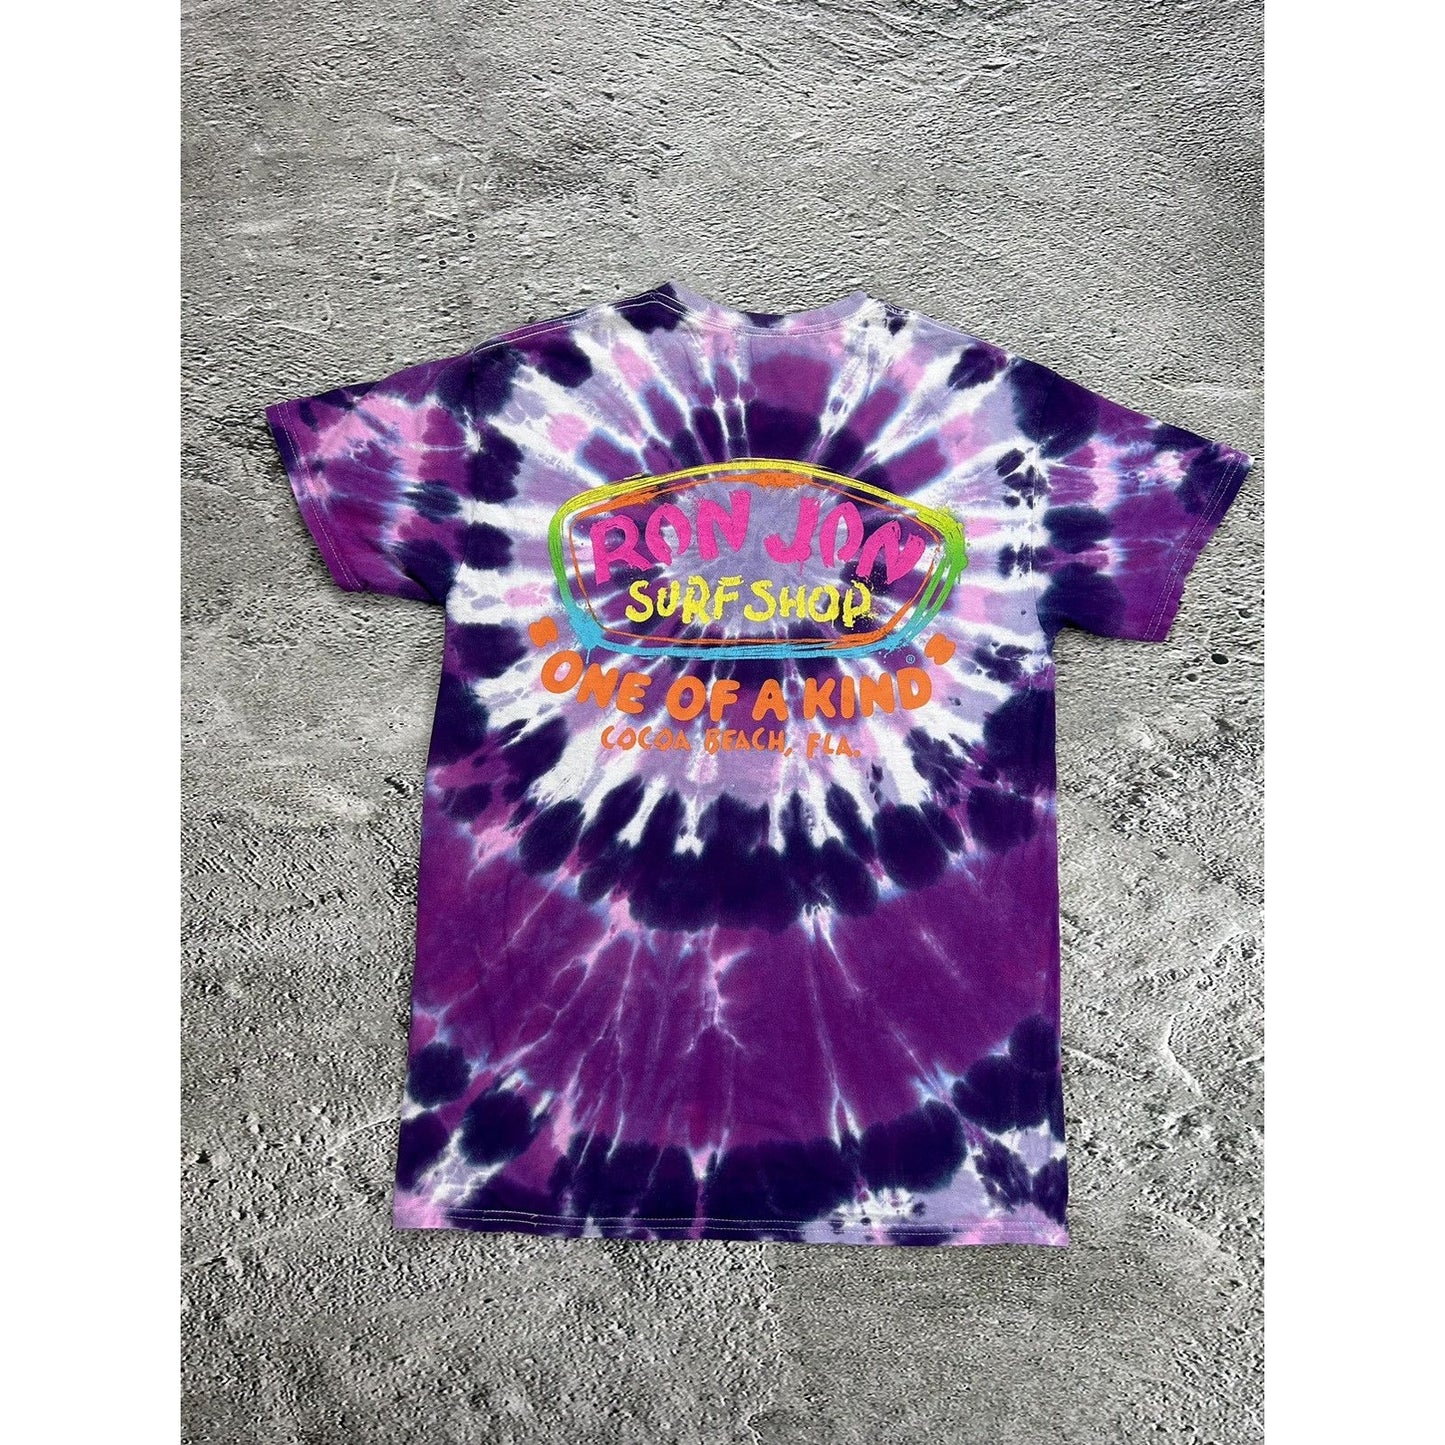 Vintage Official Ron Jon Surf Shop T-shirt Tie Dye purple